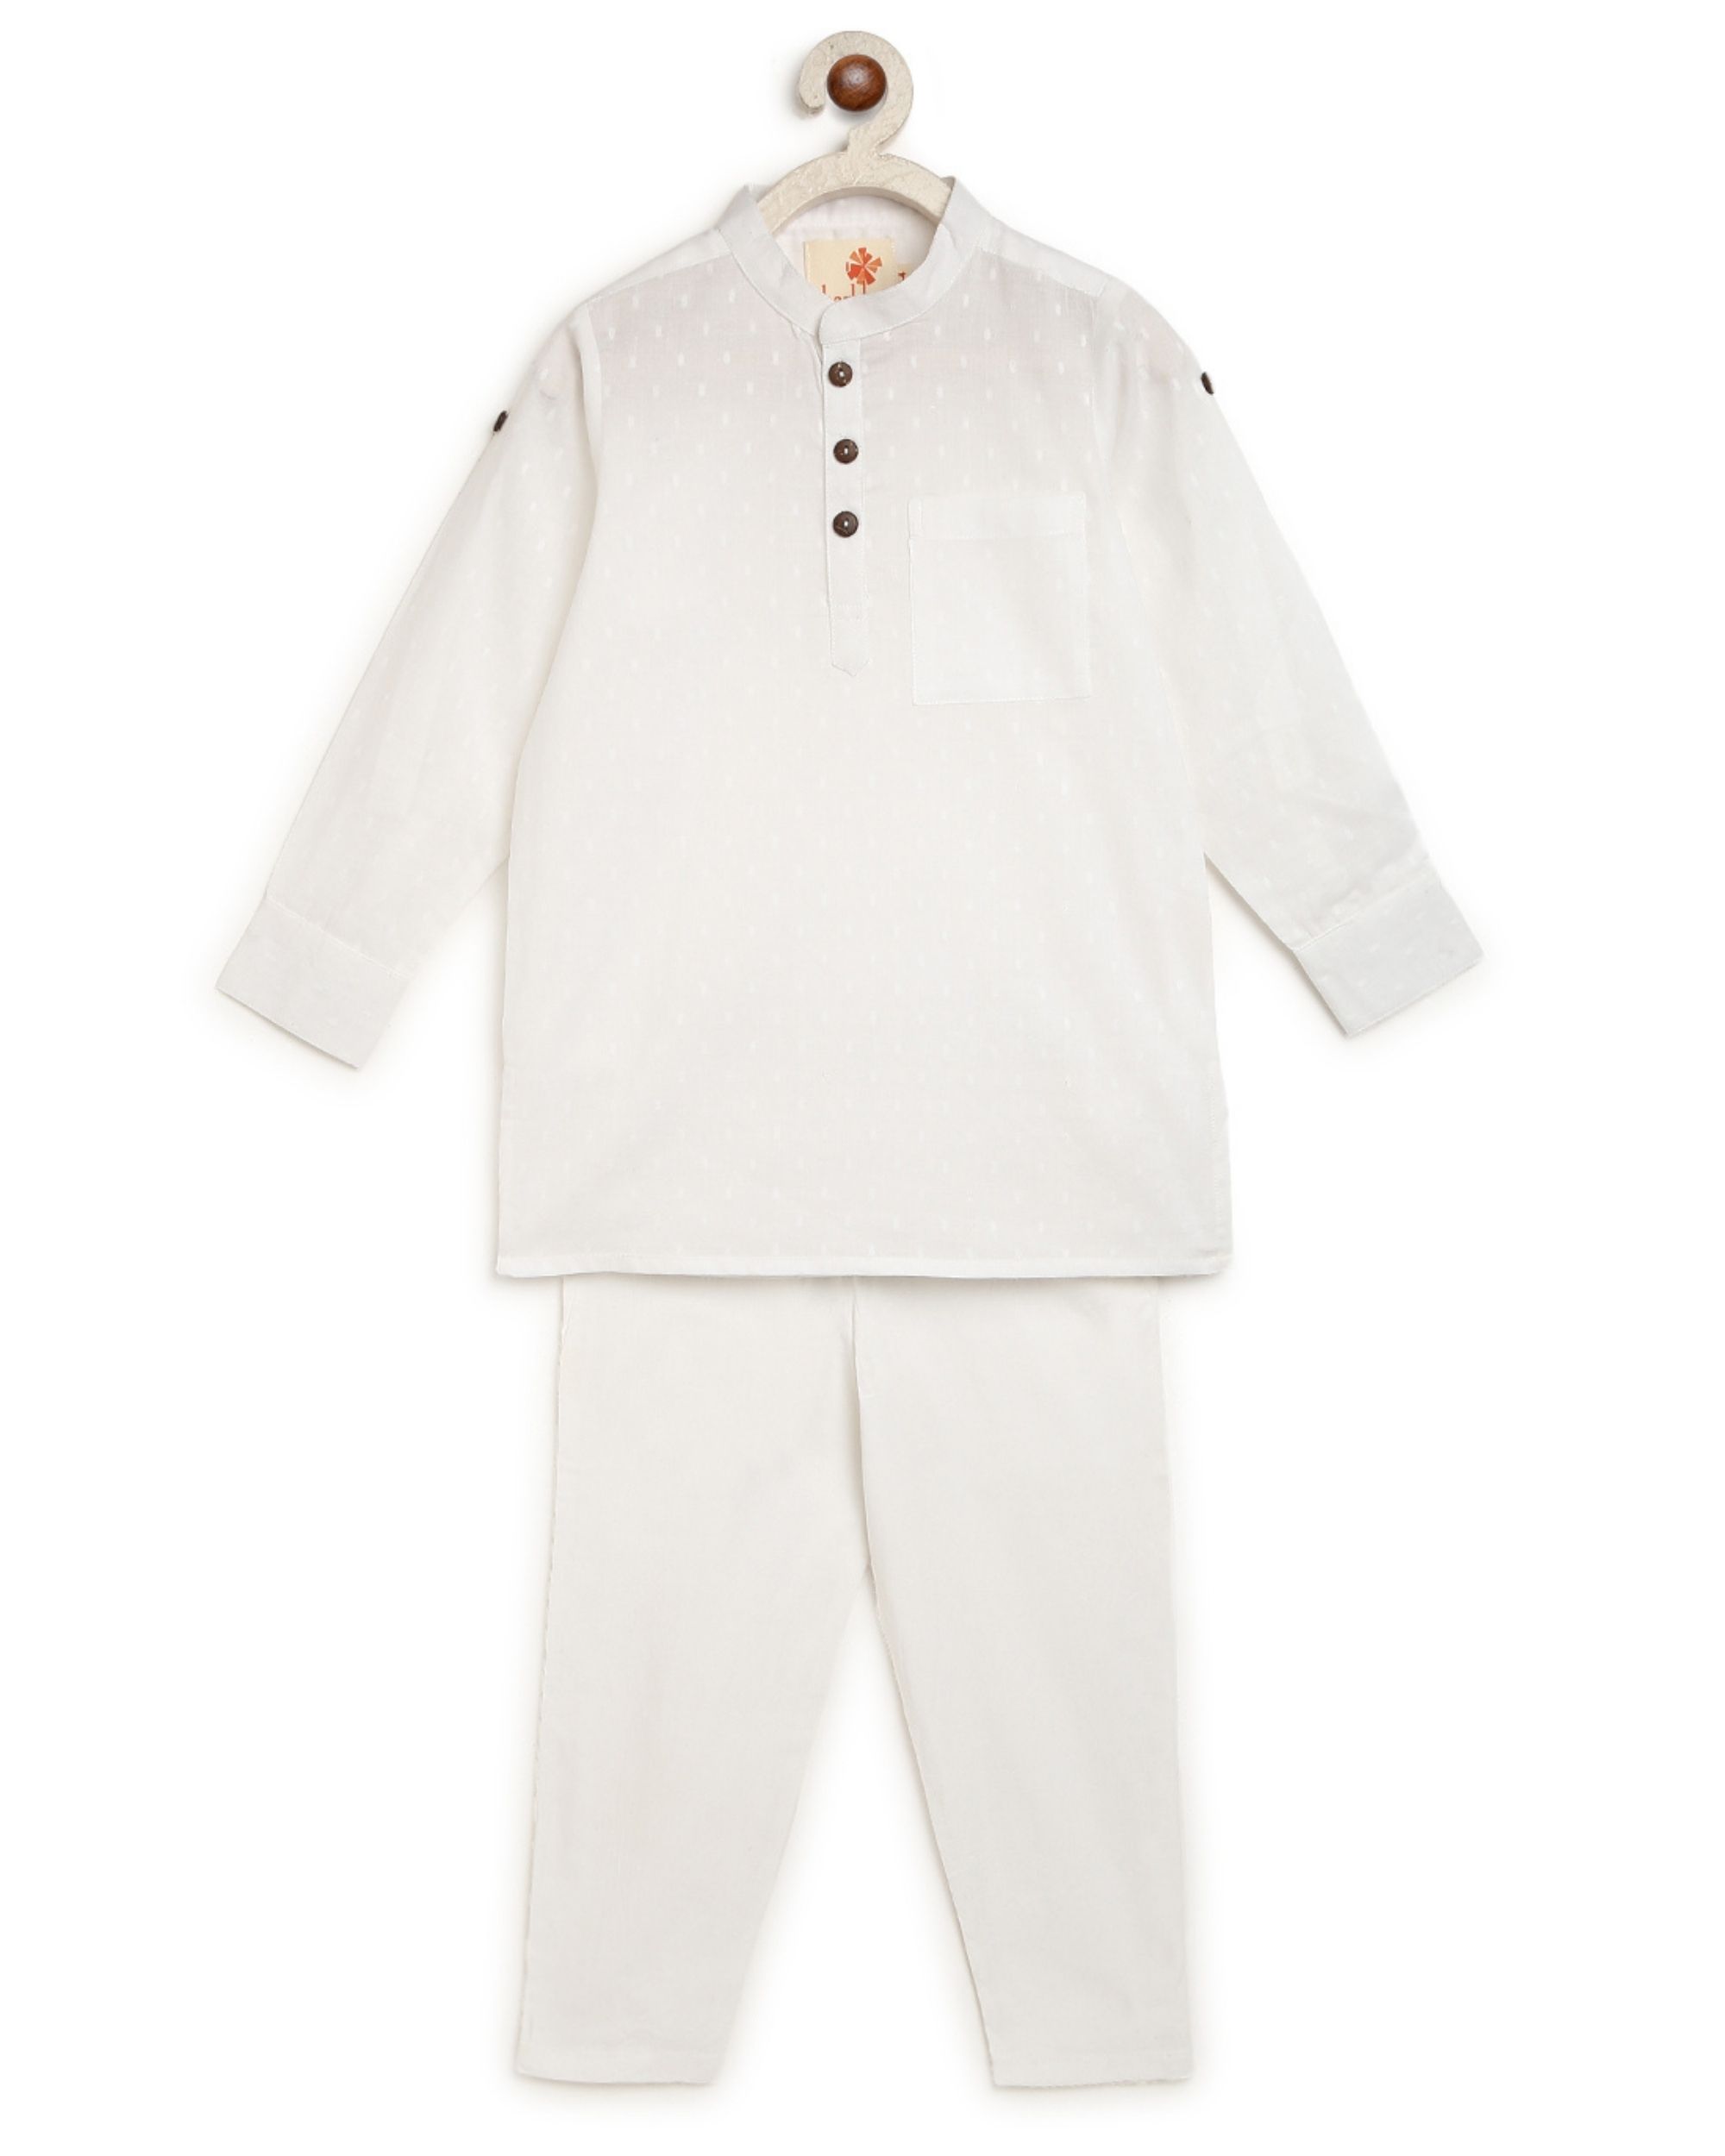 White self design kurta with white pyjama - set of two